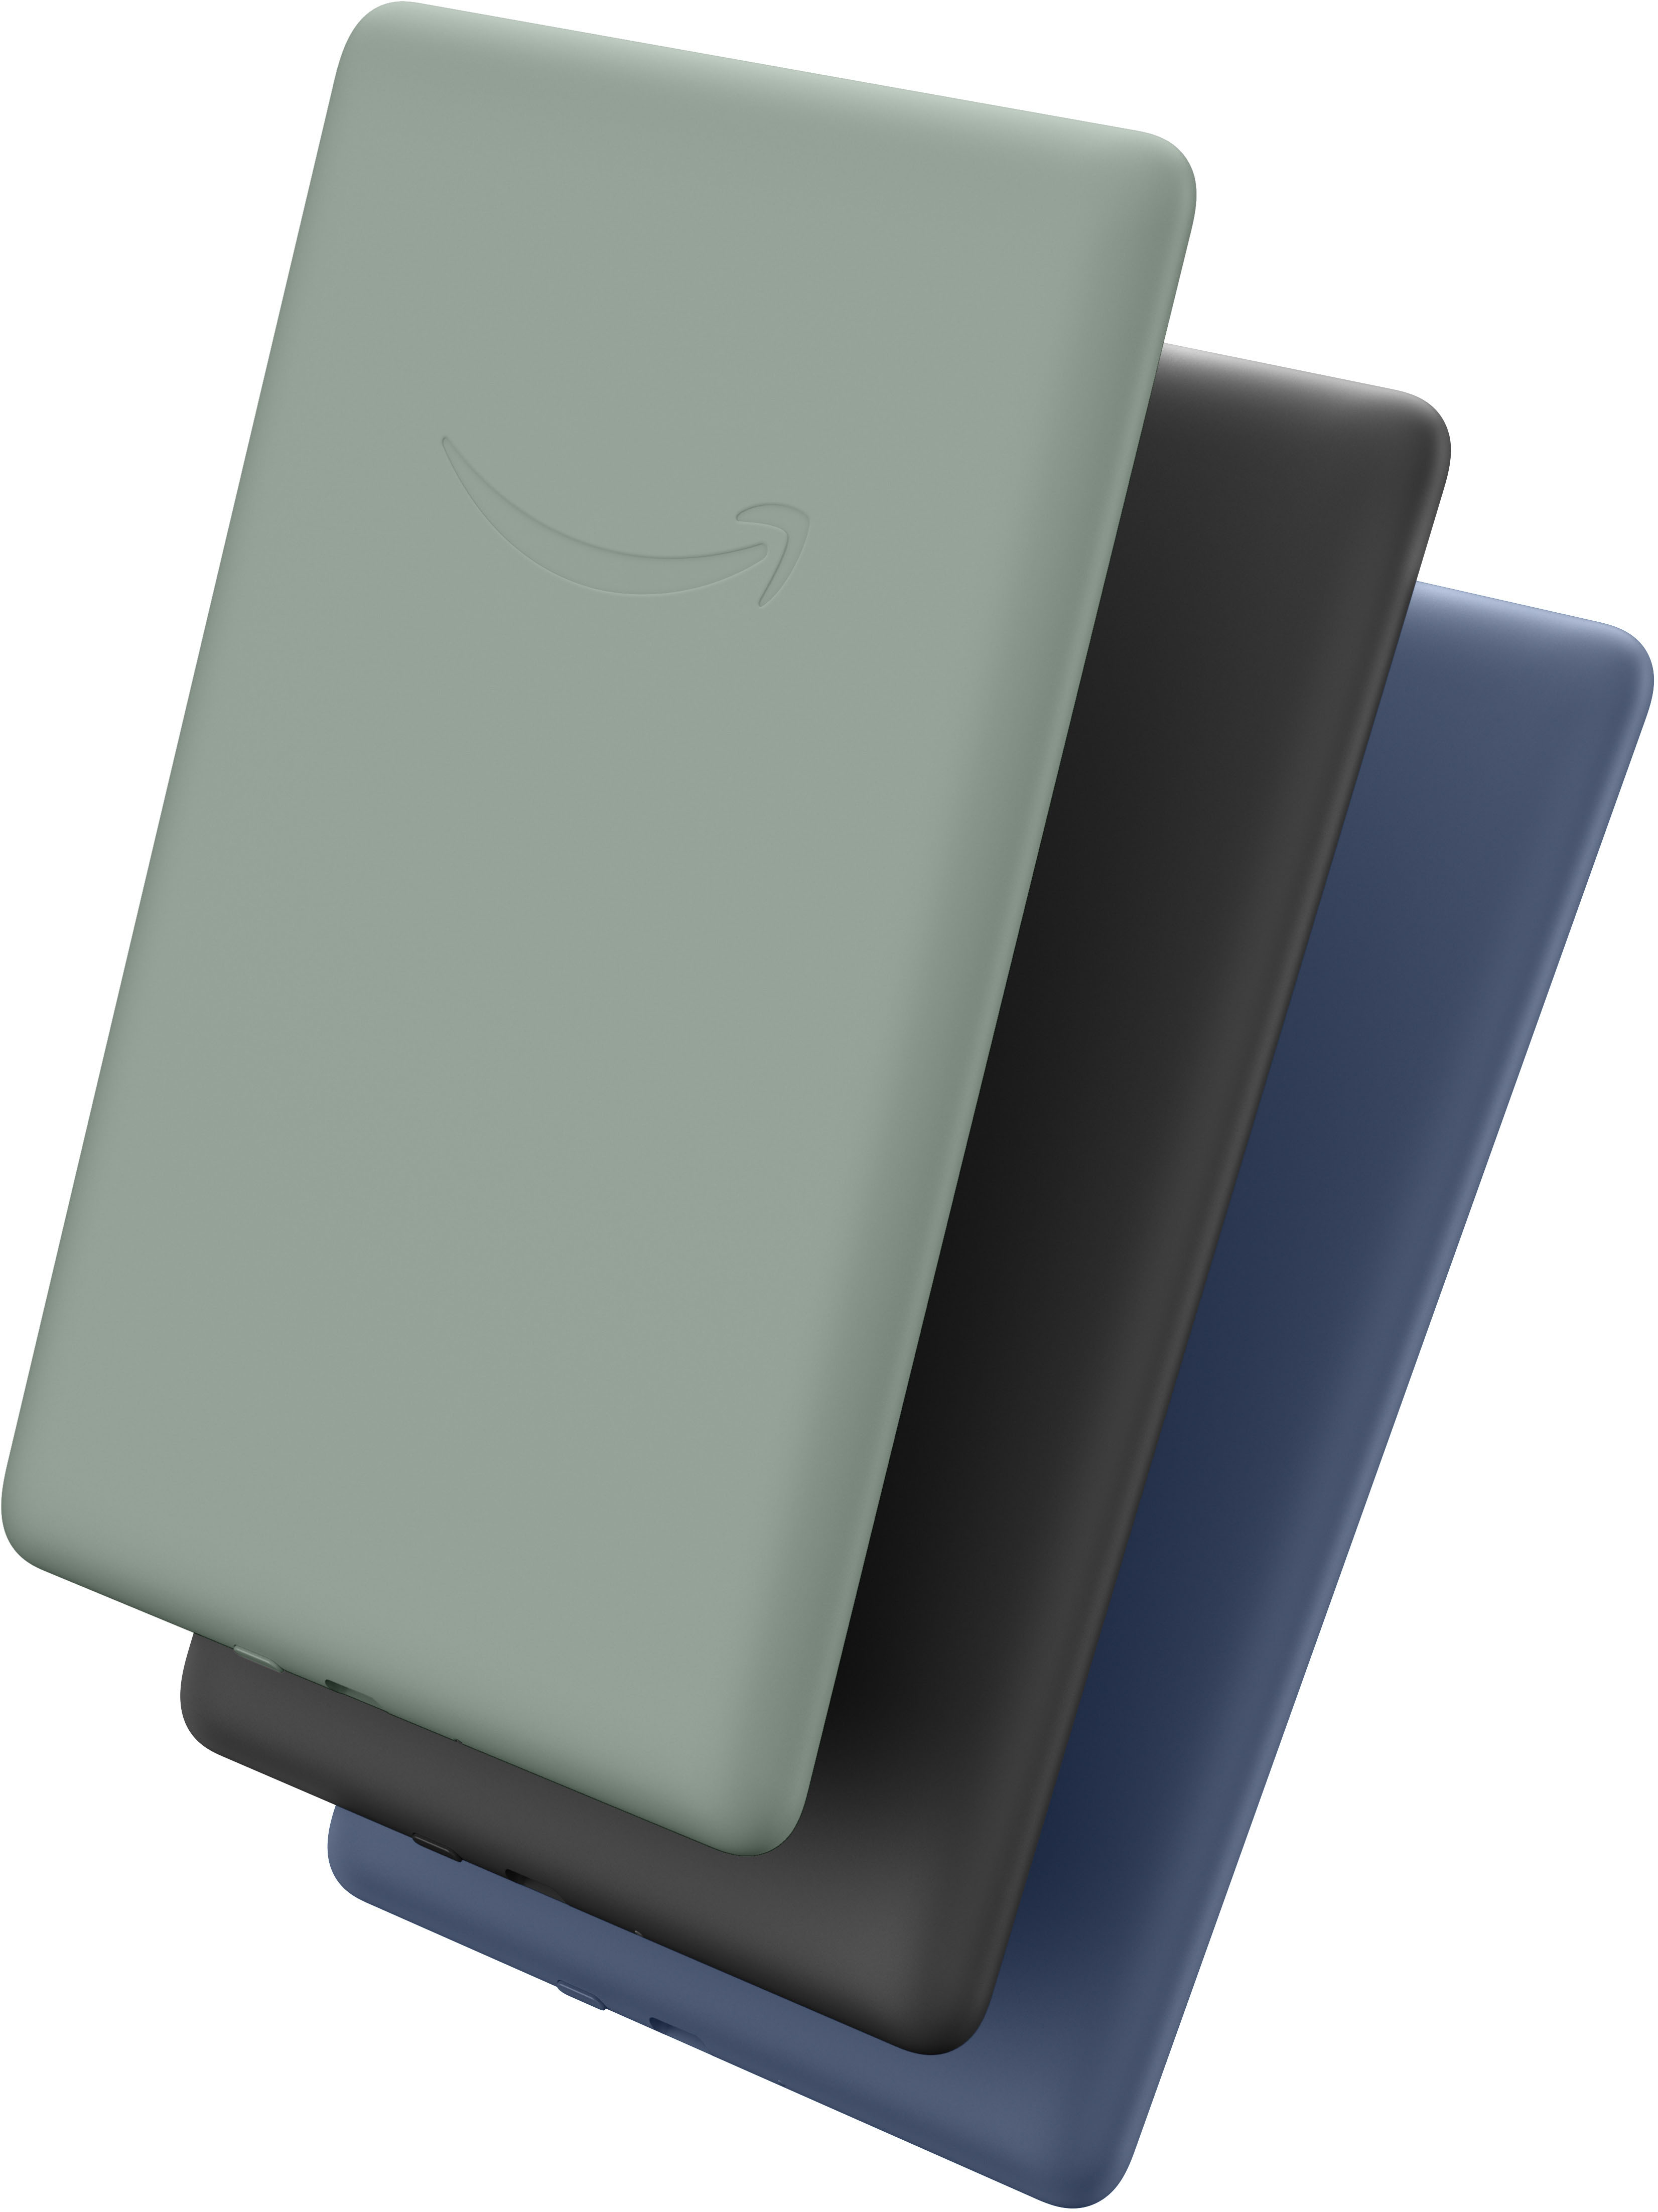 Paquete de elementos esenciales para Kindle Paperwhite, incluye Kindle  Paperwhite (16 GB), funda de tela (verde ágave) y adaptador de corriente